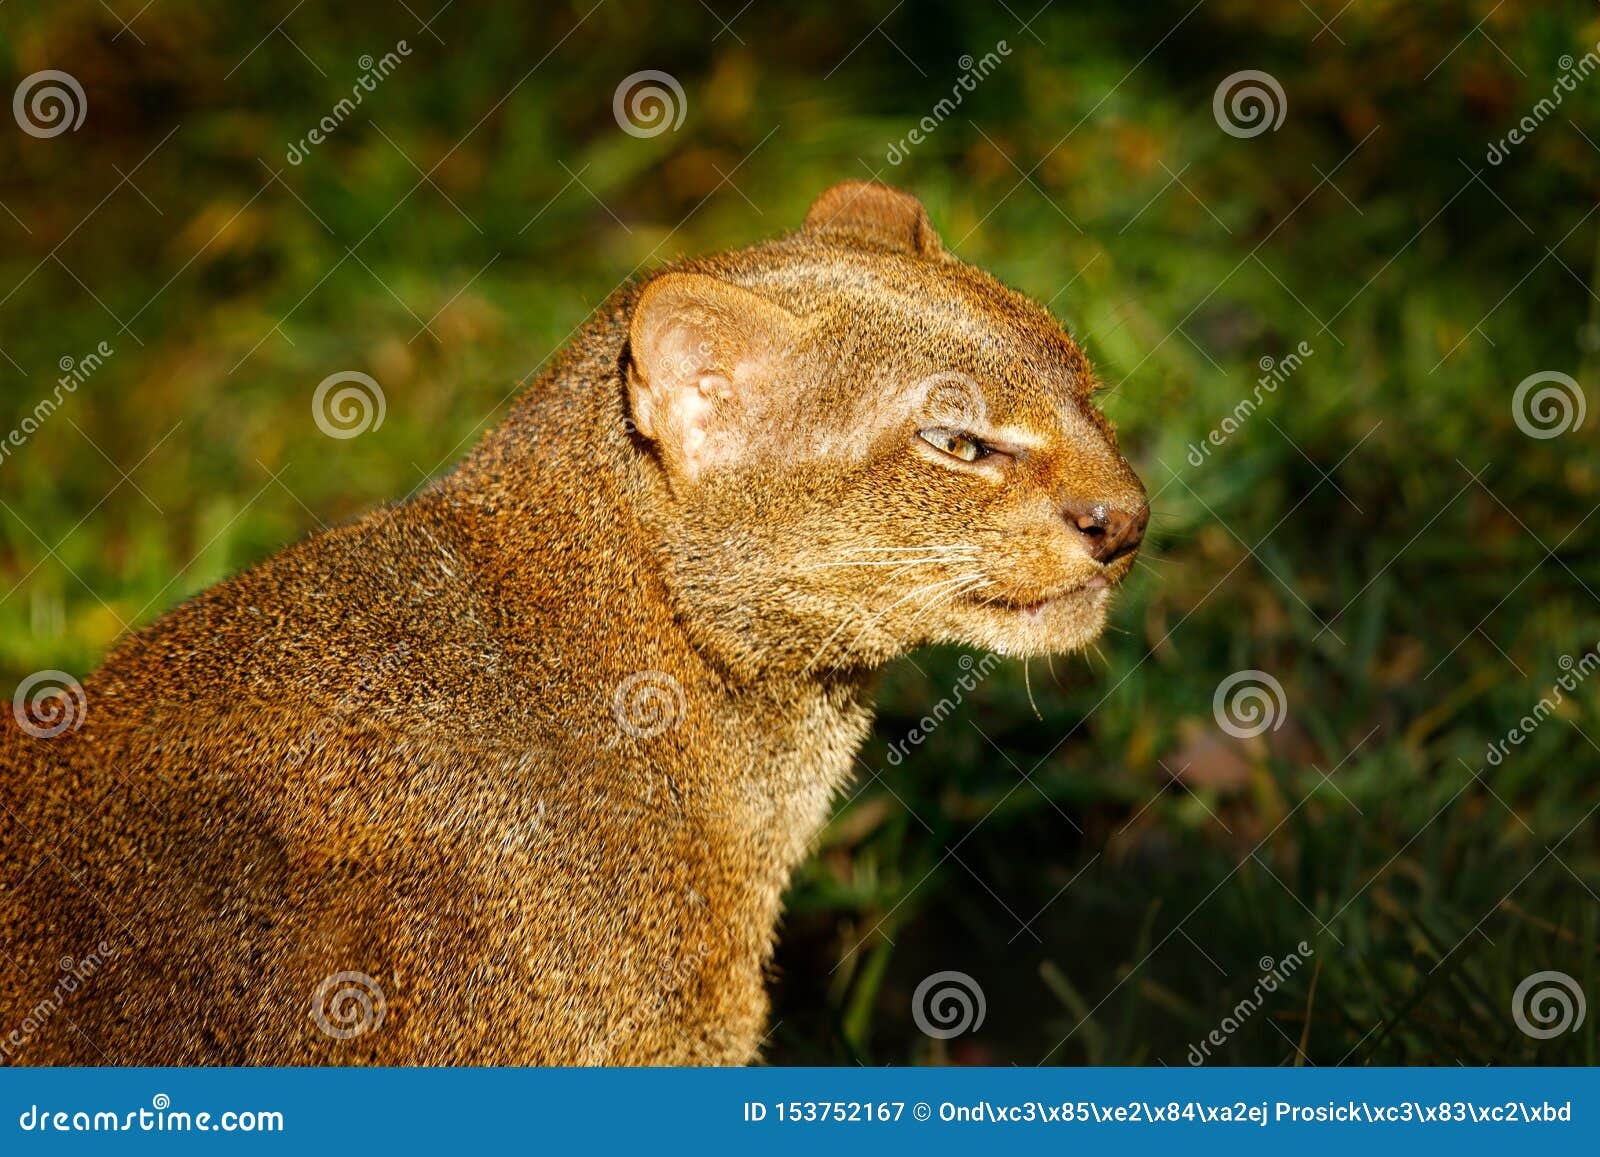 Puma yagouaroundi hi-res stock photography and images - Alamy